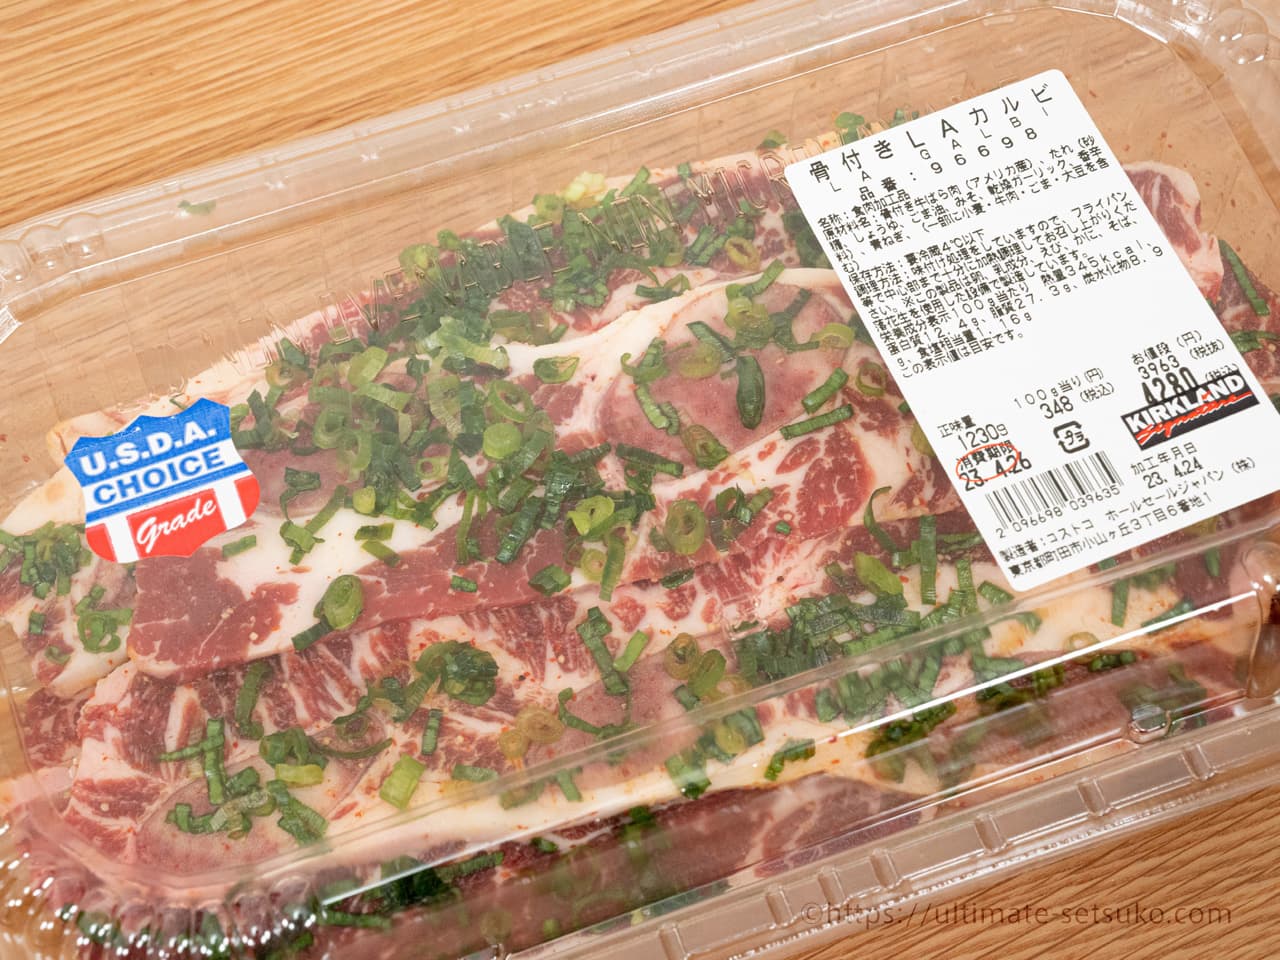 コストコのお肉 厳選おすすめ商品ランキングtop56 21年最新版